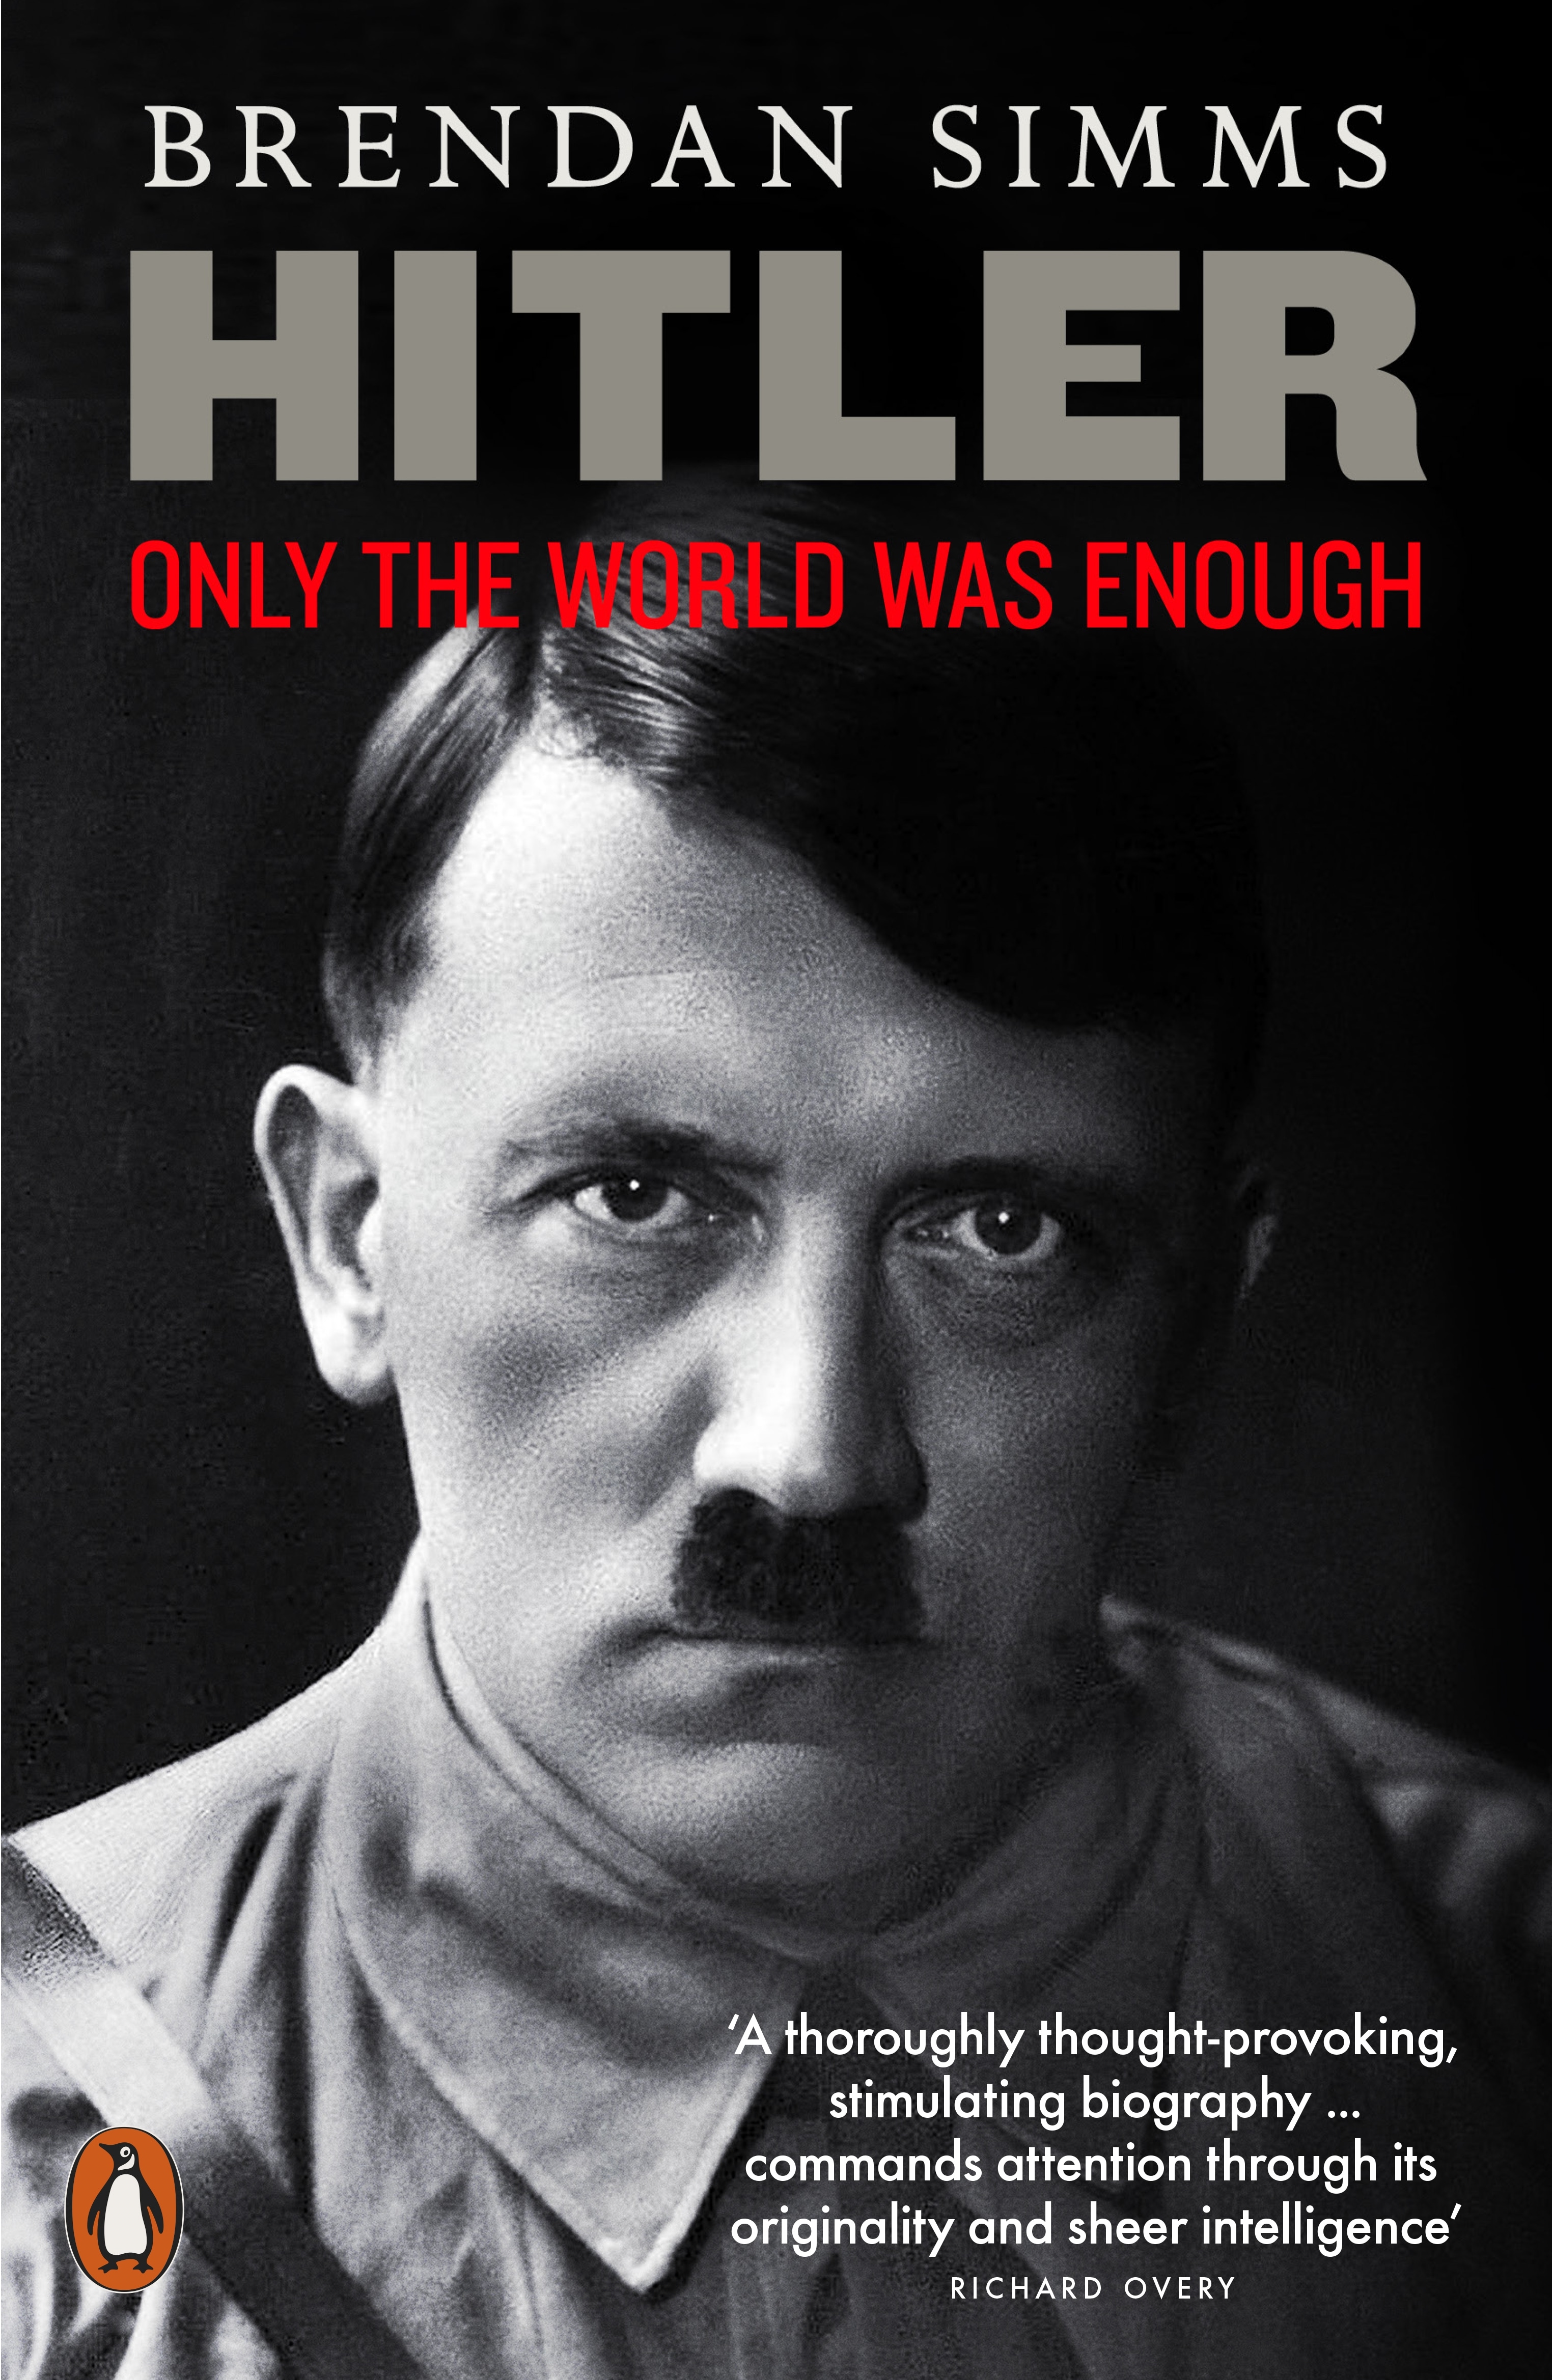 Book “Hitler” by Brendan Simms — September 3, 2020